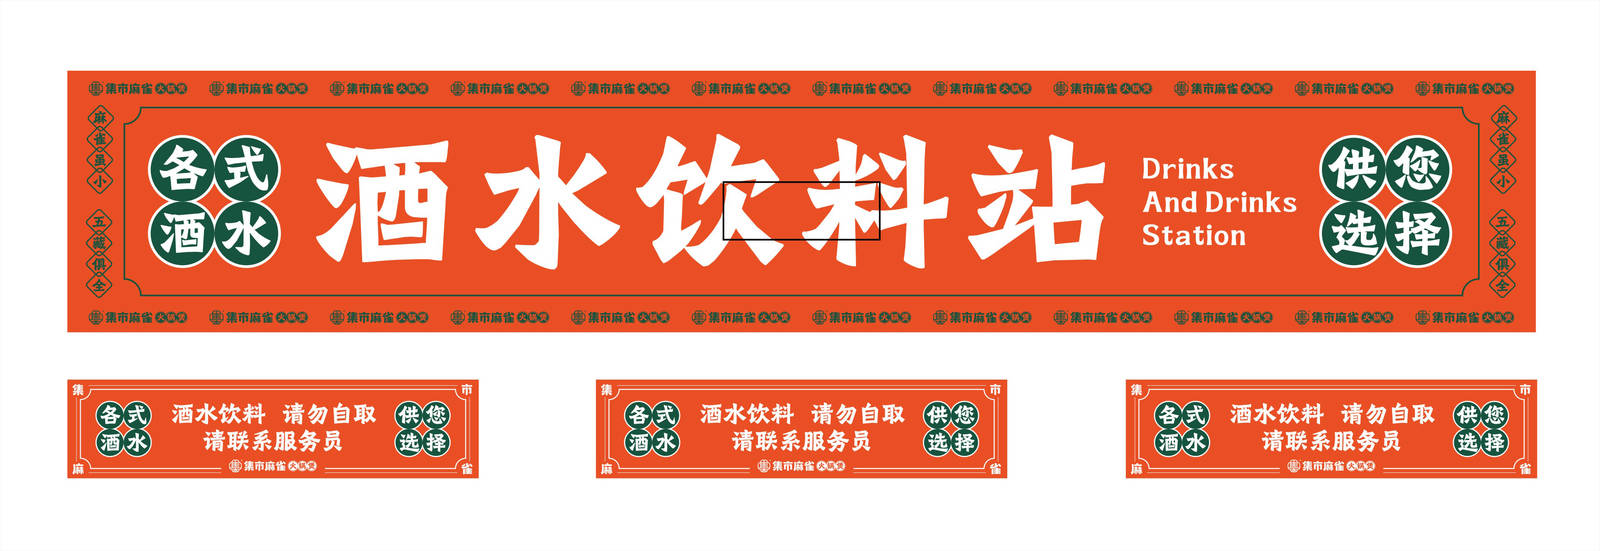 集市麻雀品牌四川火锅餐饮标志LOGO-第30张